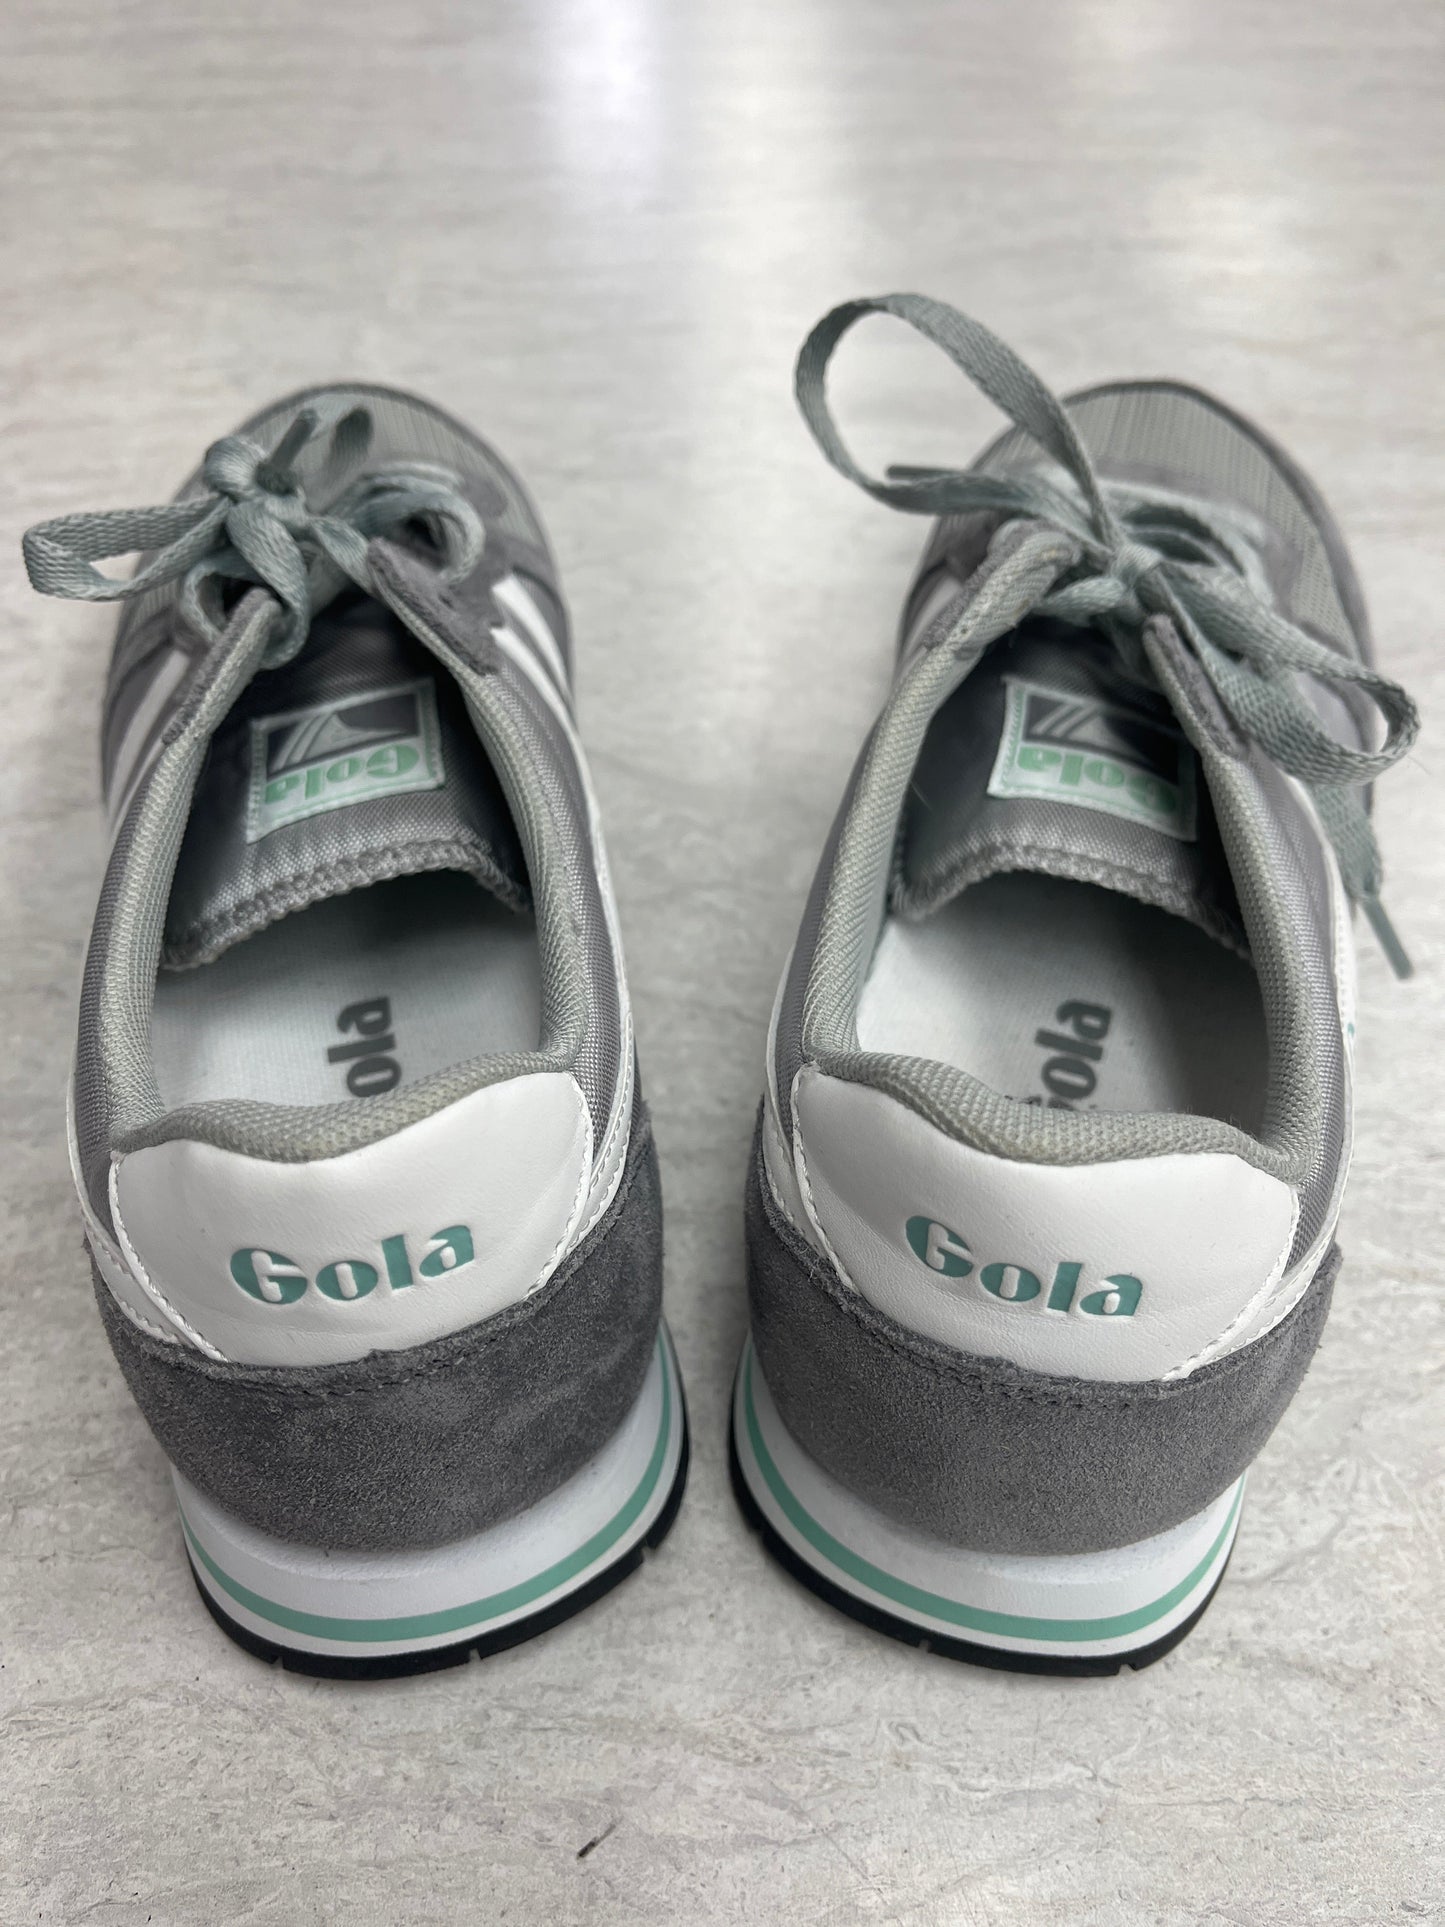 Grey Shoes Athletic Gola, Size 10